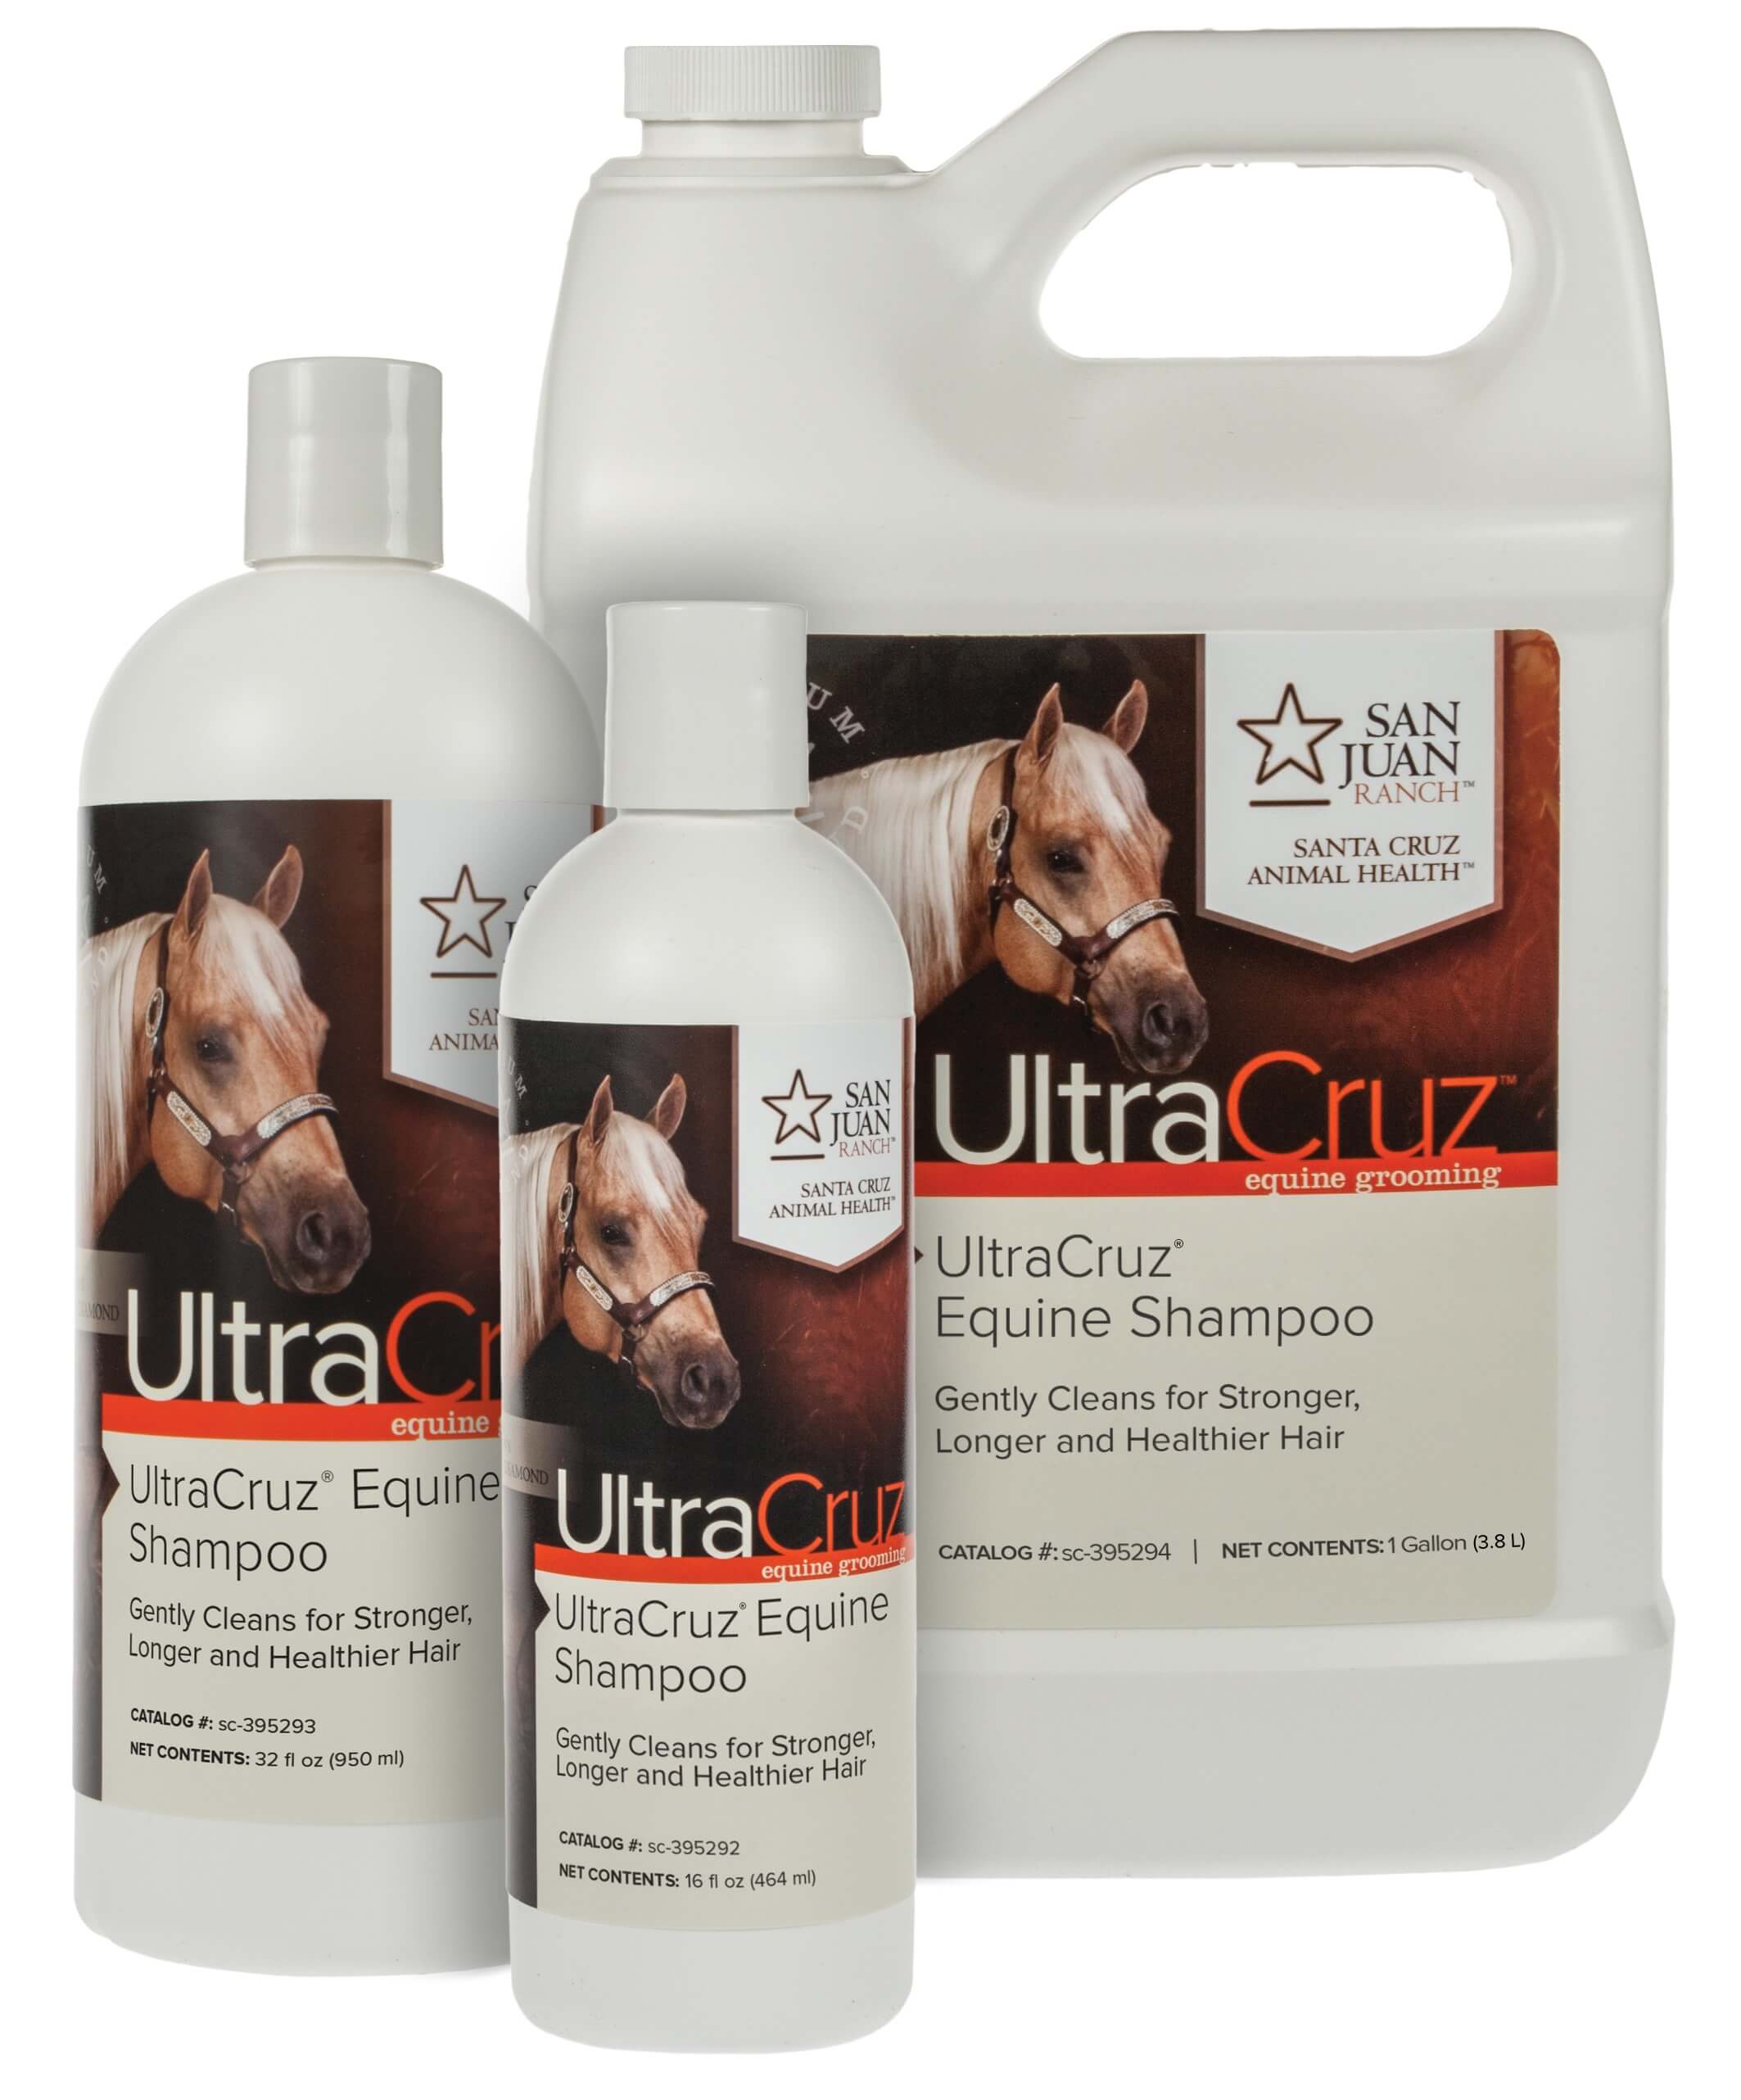 Ultra Cruz Equine Shampoo